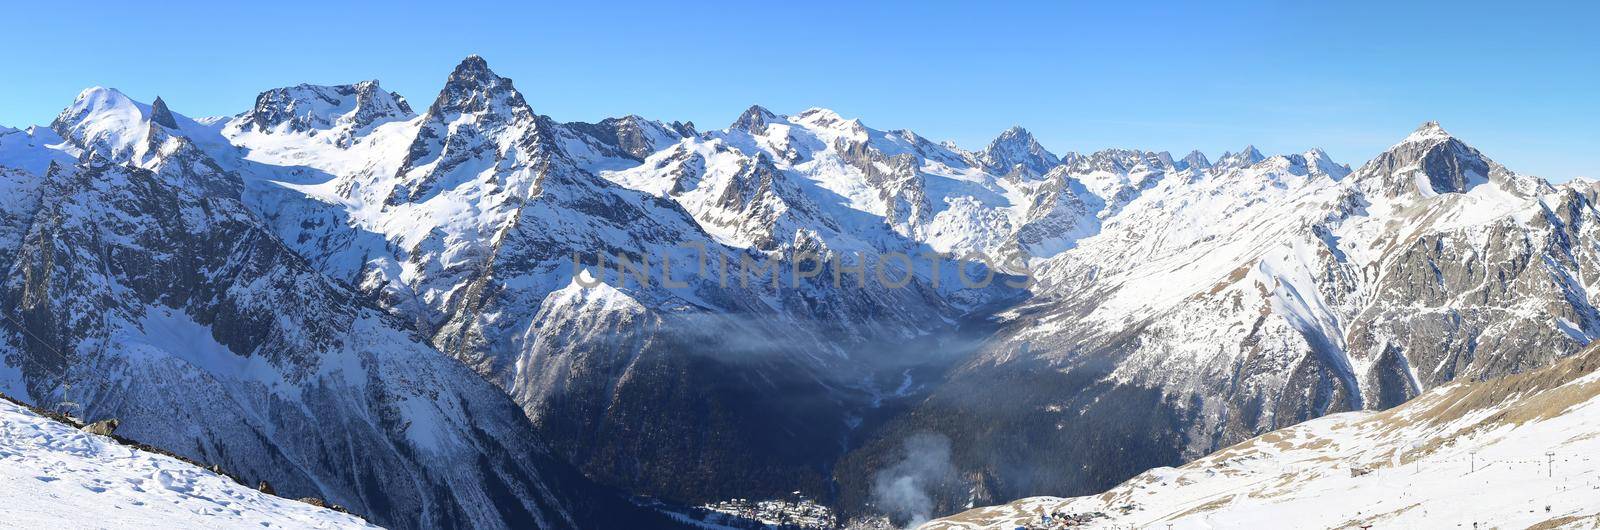 Panorama of winter mountains in Caucasus region, Dombai, Russia